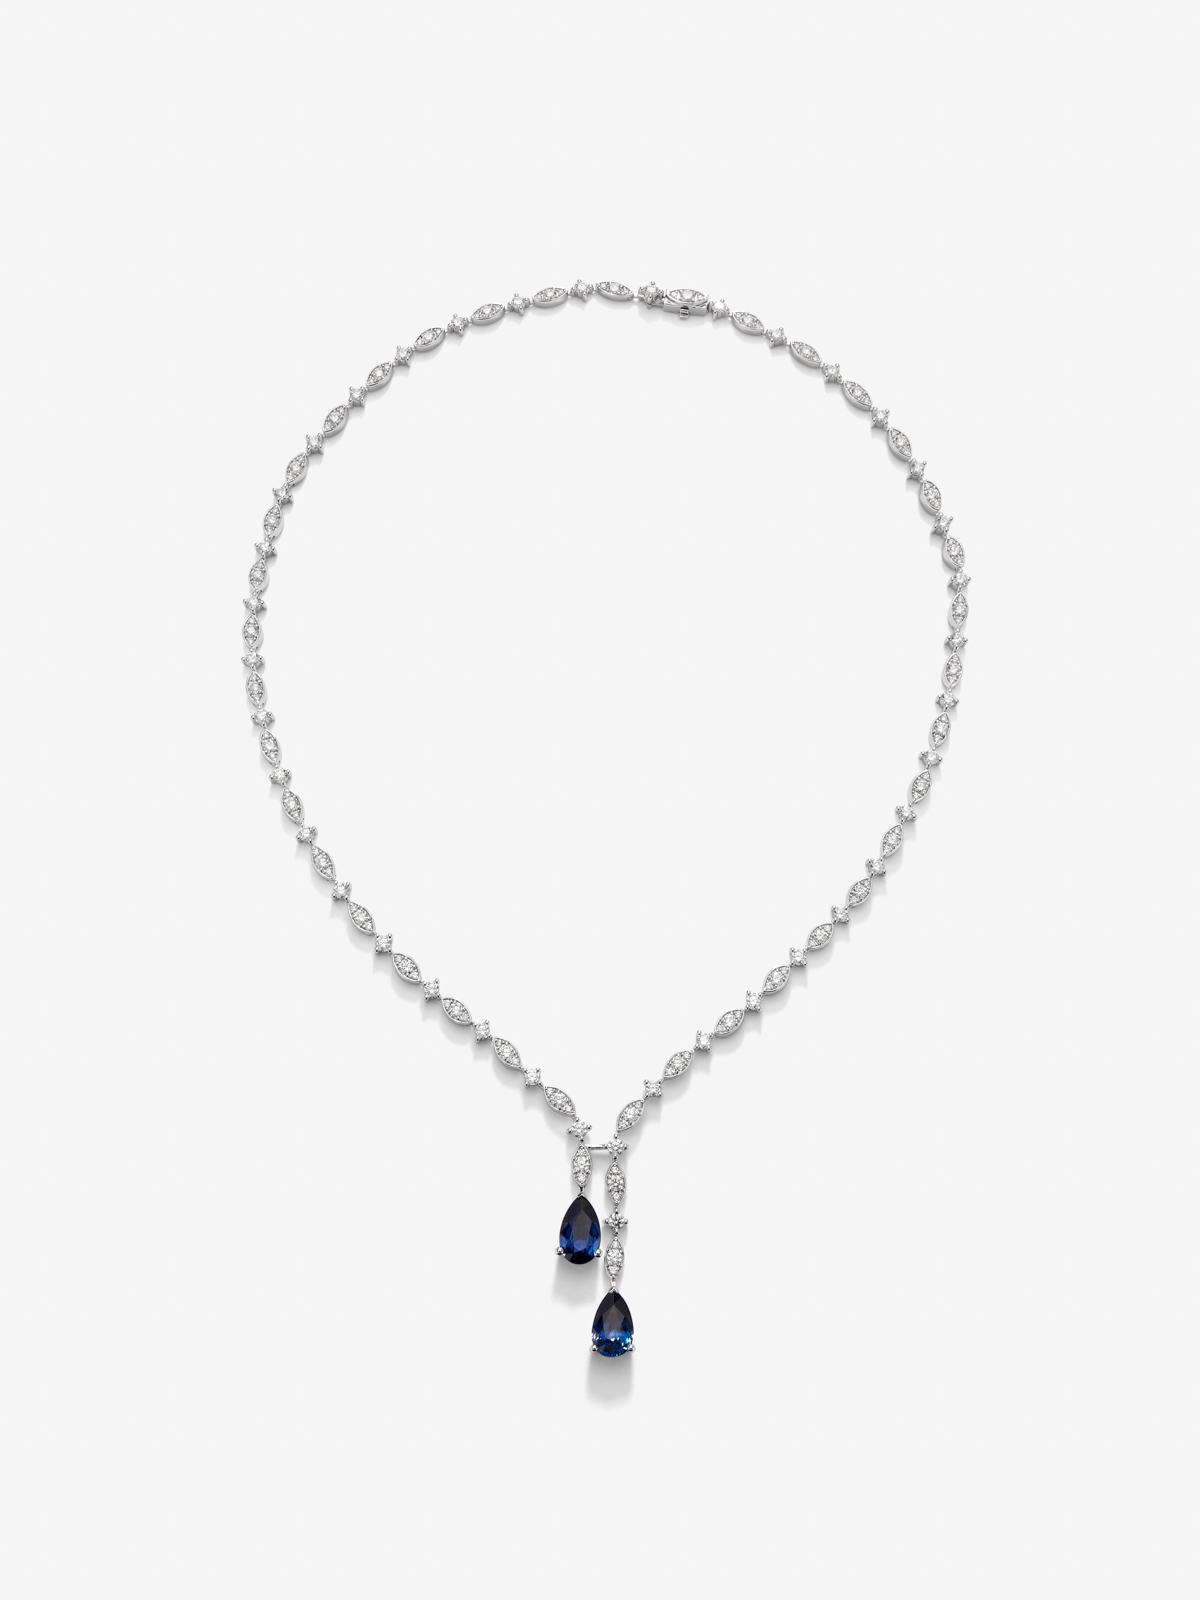 Collar de oro blanco de 18K con zafiro azul intenso en talla pera de 2,08 cts, zafiro azul royal en talla pera de 2,07 cts y diamantes blancos en talla brillante de 6,38 cts